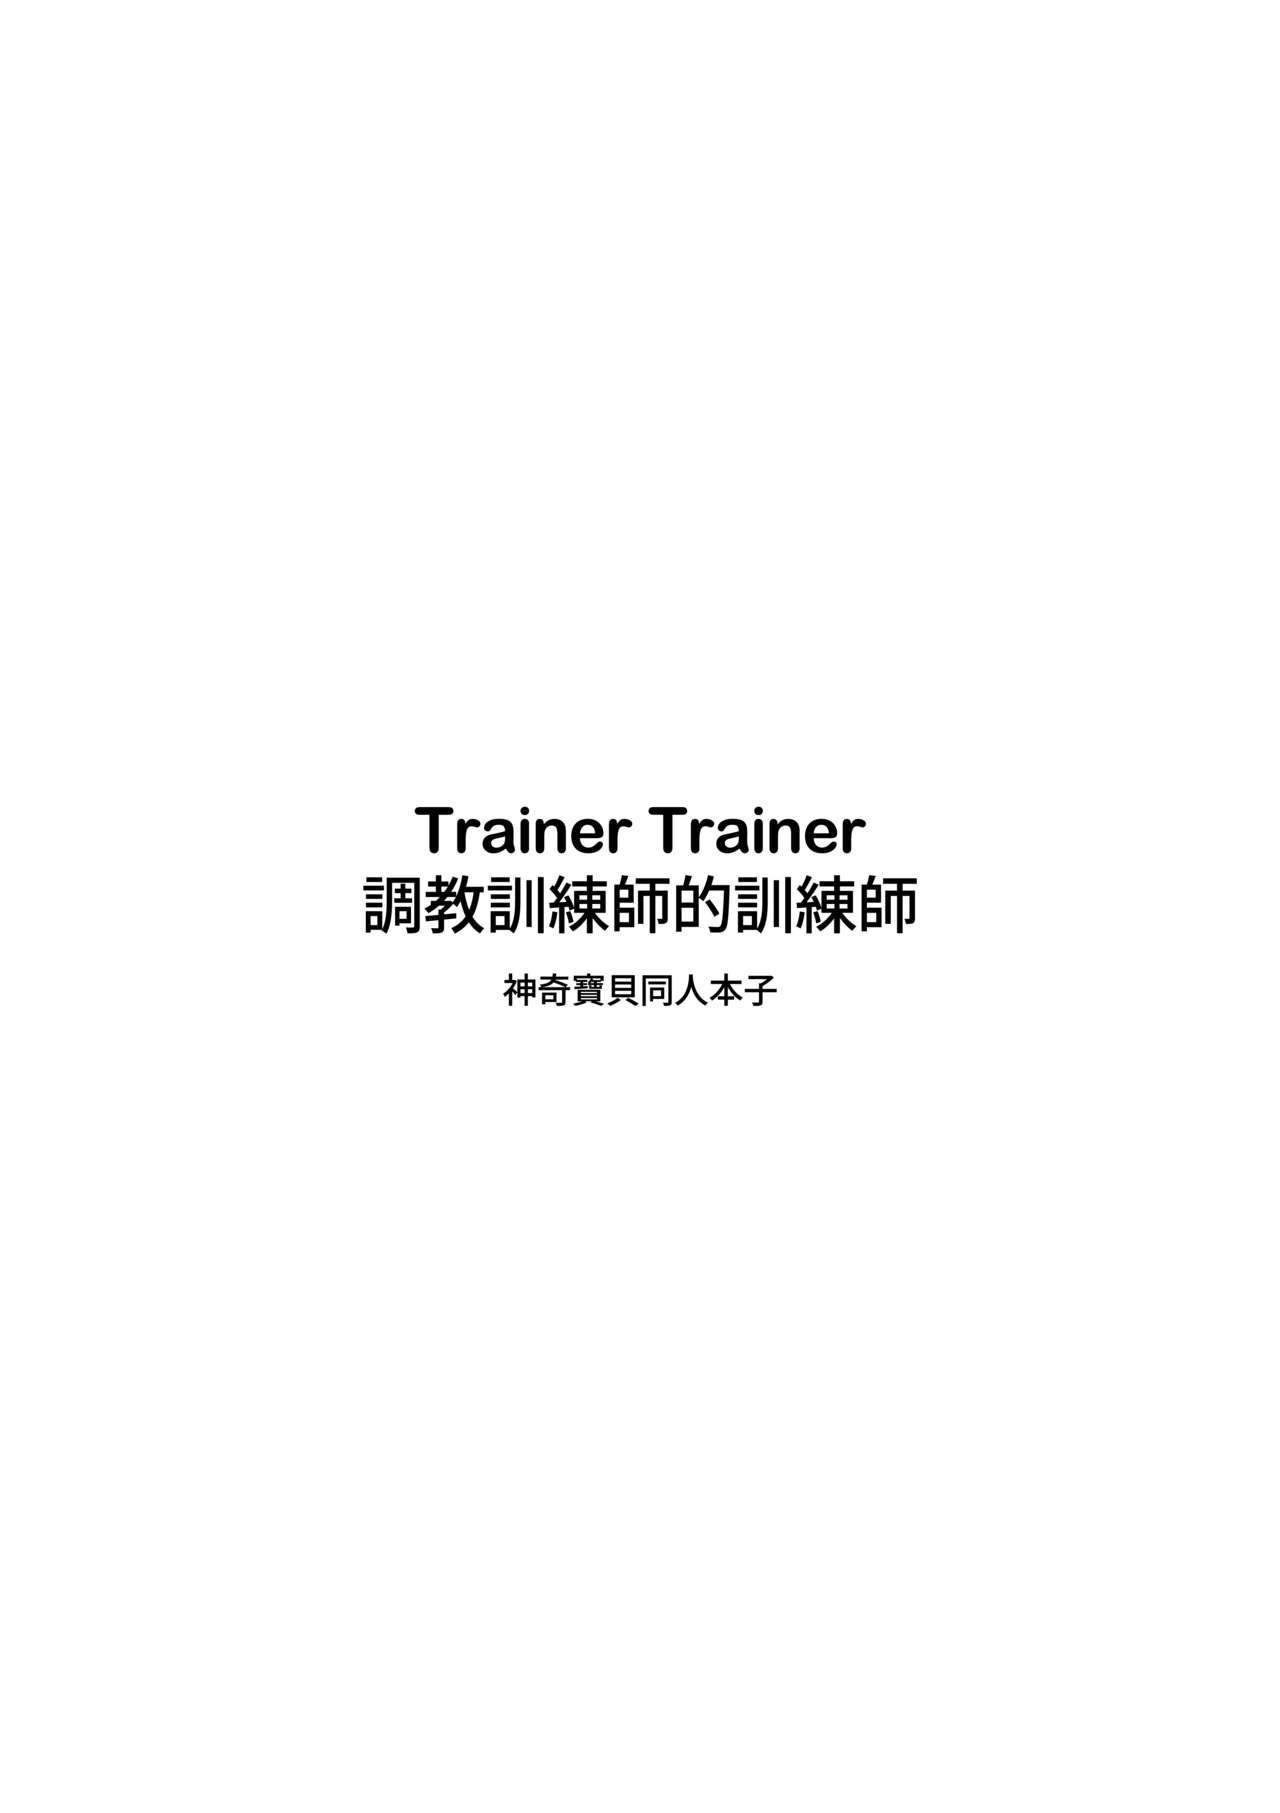 Fun Trainer Trainer - Pokemon Moneytalks - Page 3